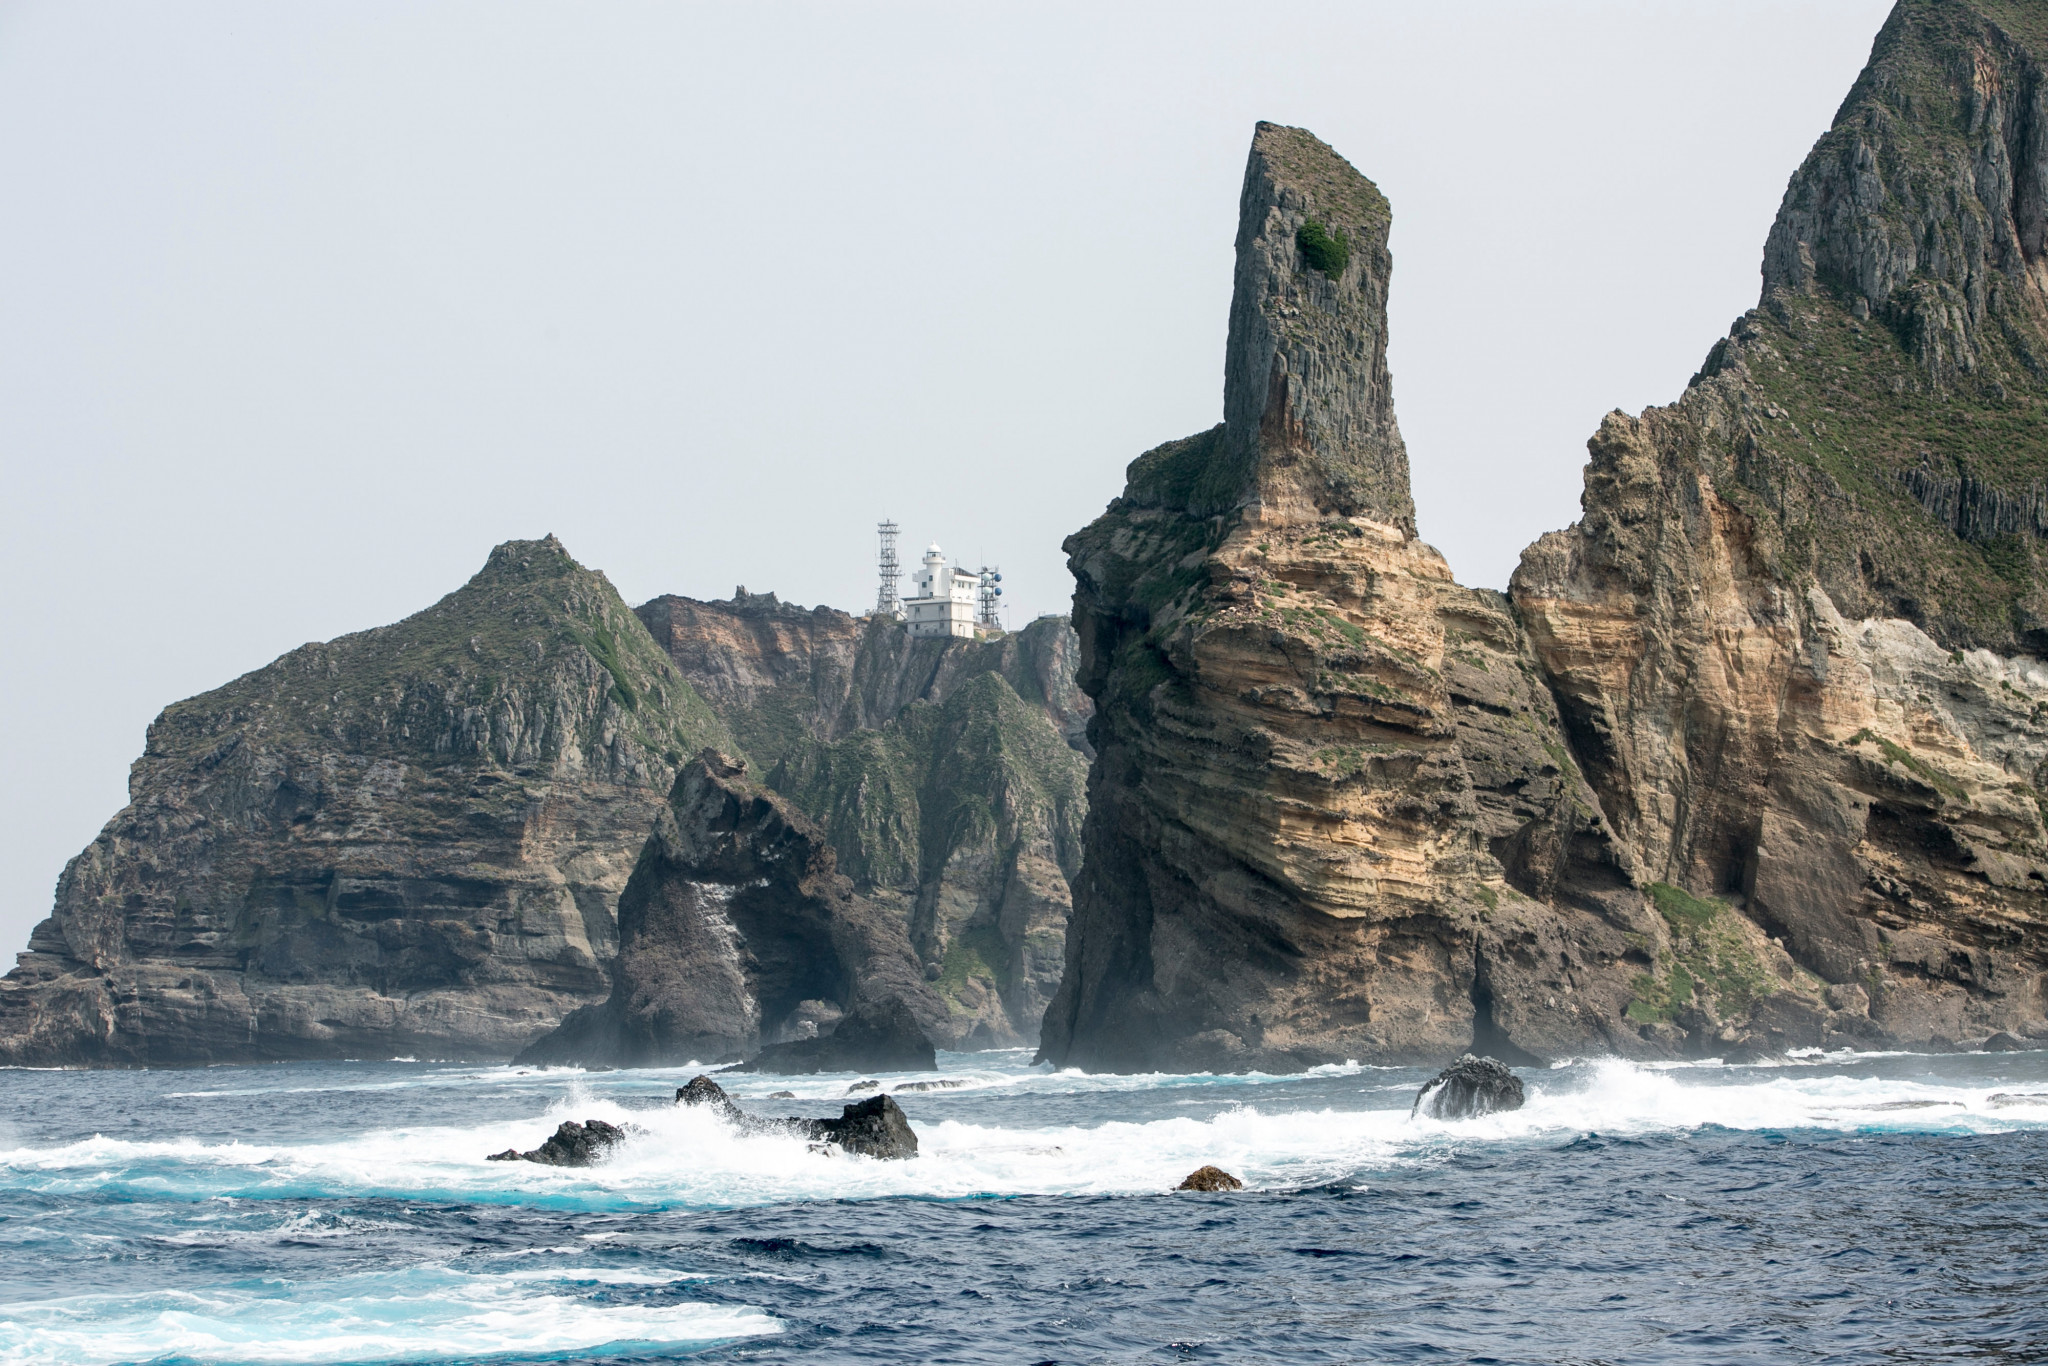 조선민주주의인민공화국 석유공사는 지도에 섬을 포함시킨 것은 일본 열도에 대한 조사로 보인다고 주장한다. "지역적 야망" © 게티 이미지